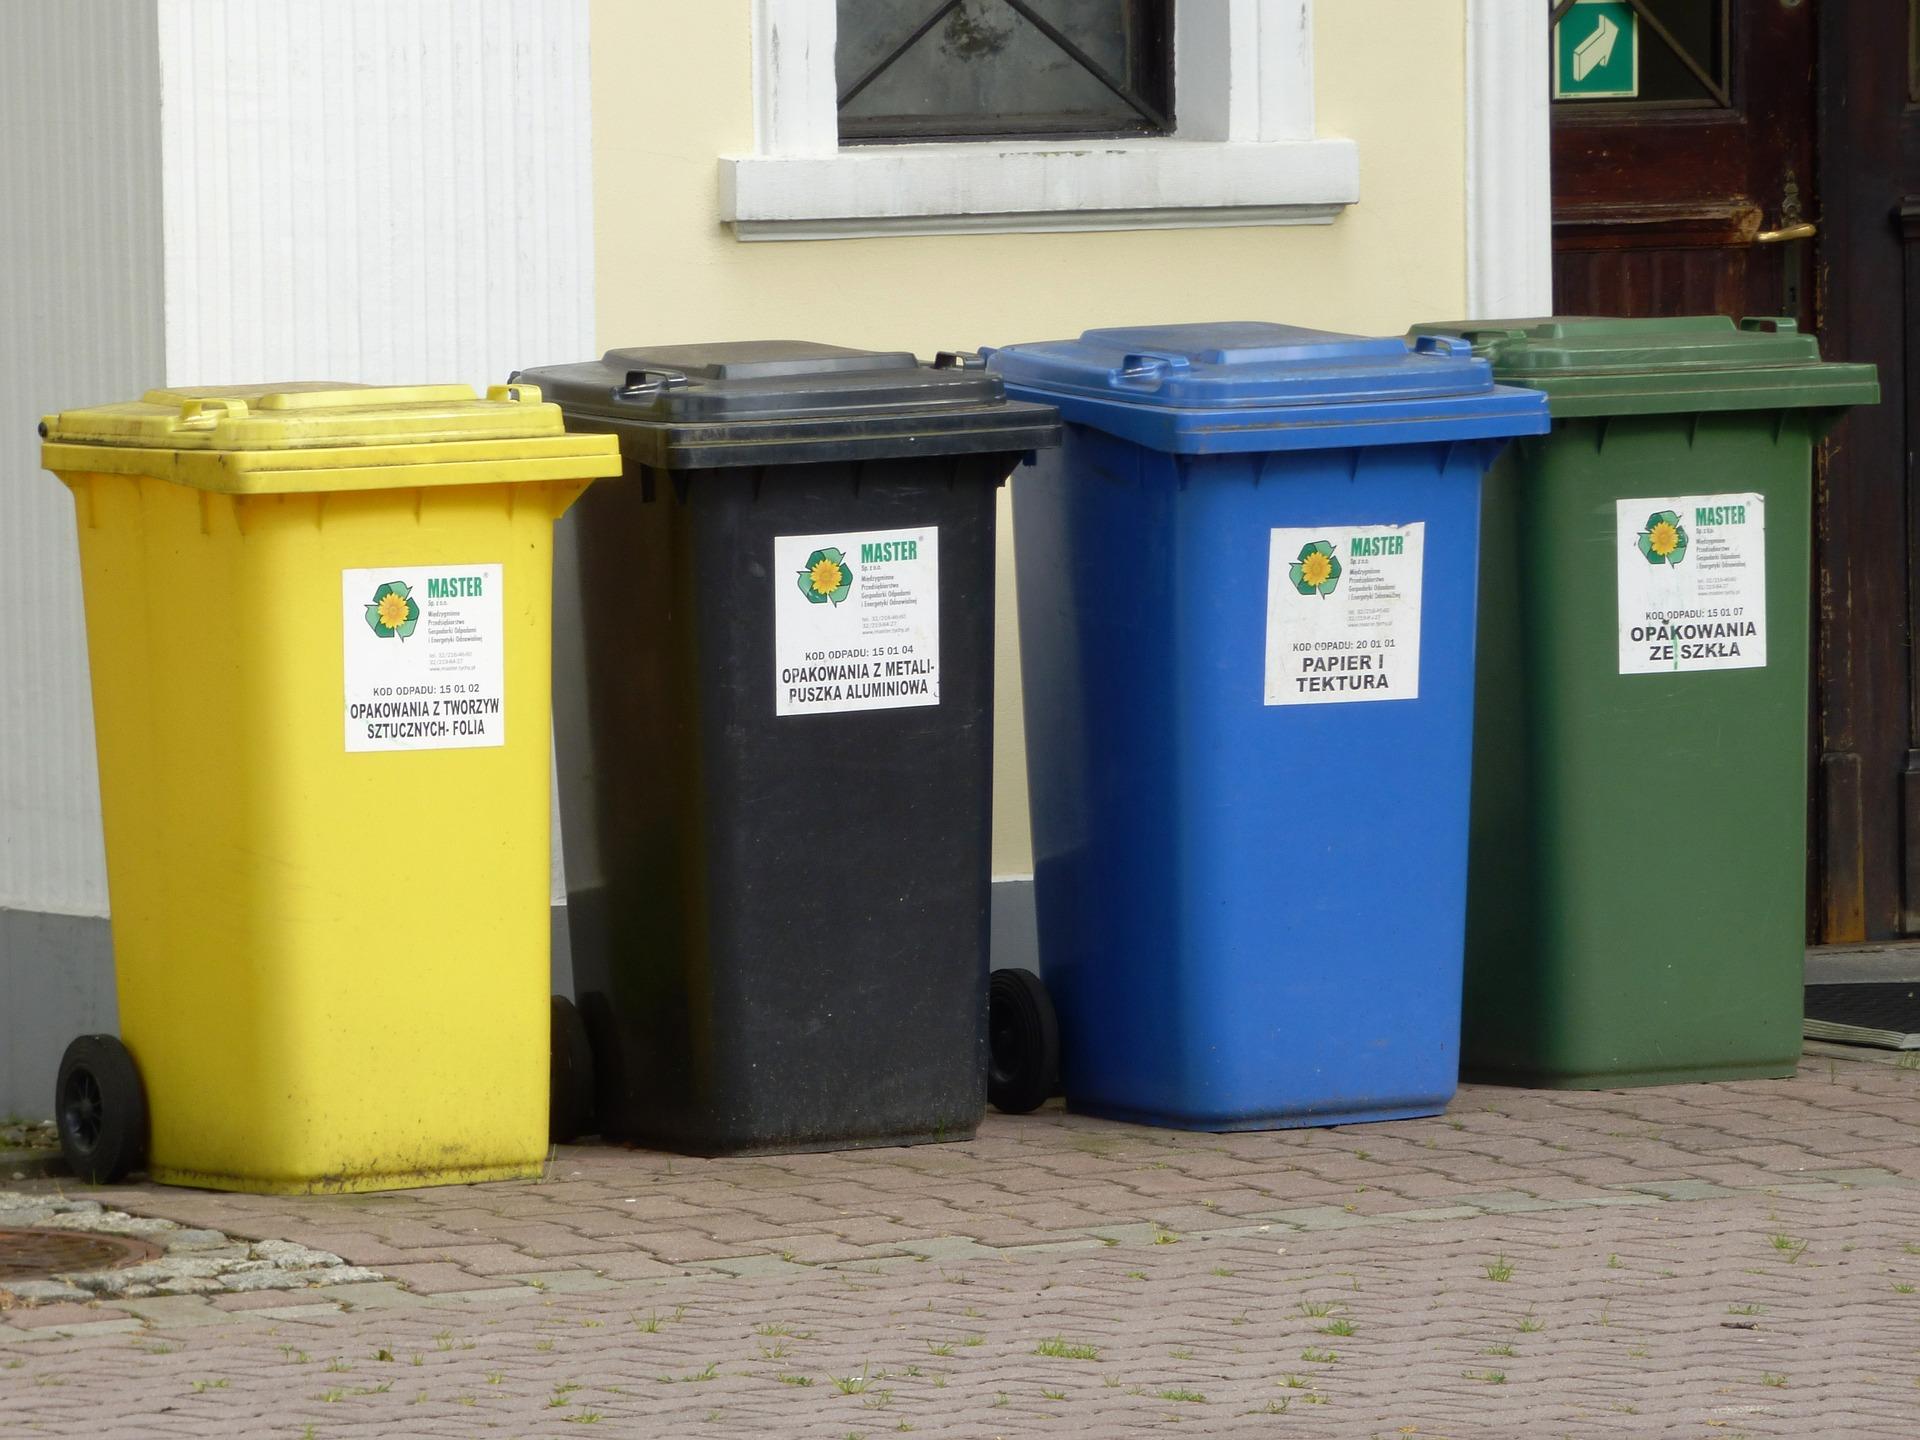 Советы по сортировке отходов: как утилизировать более эффективно